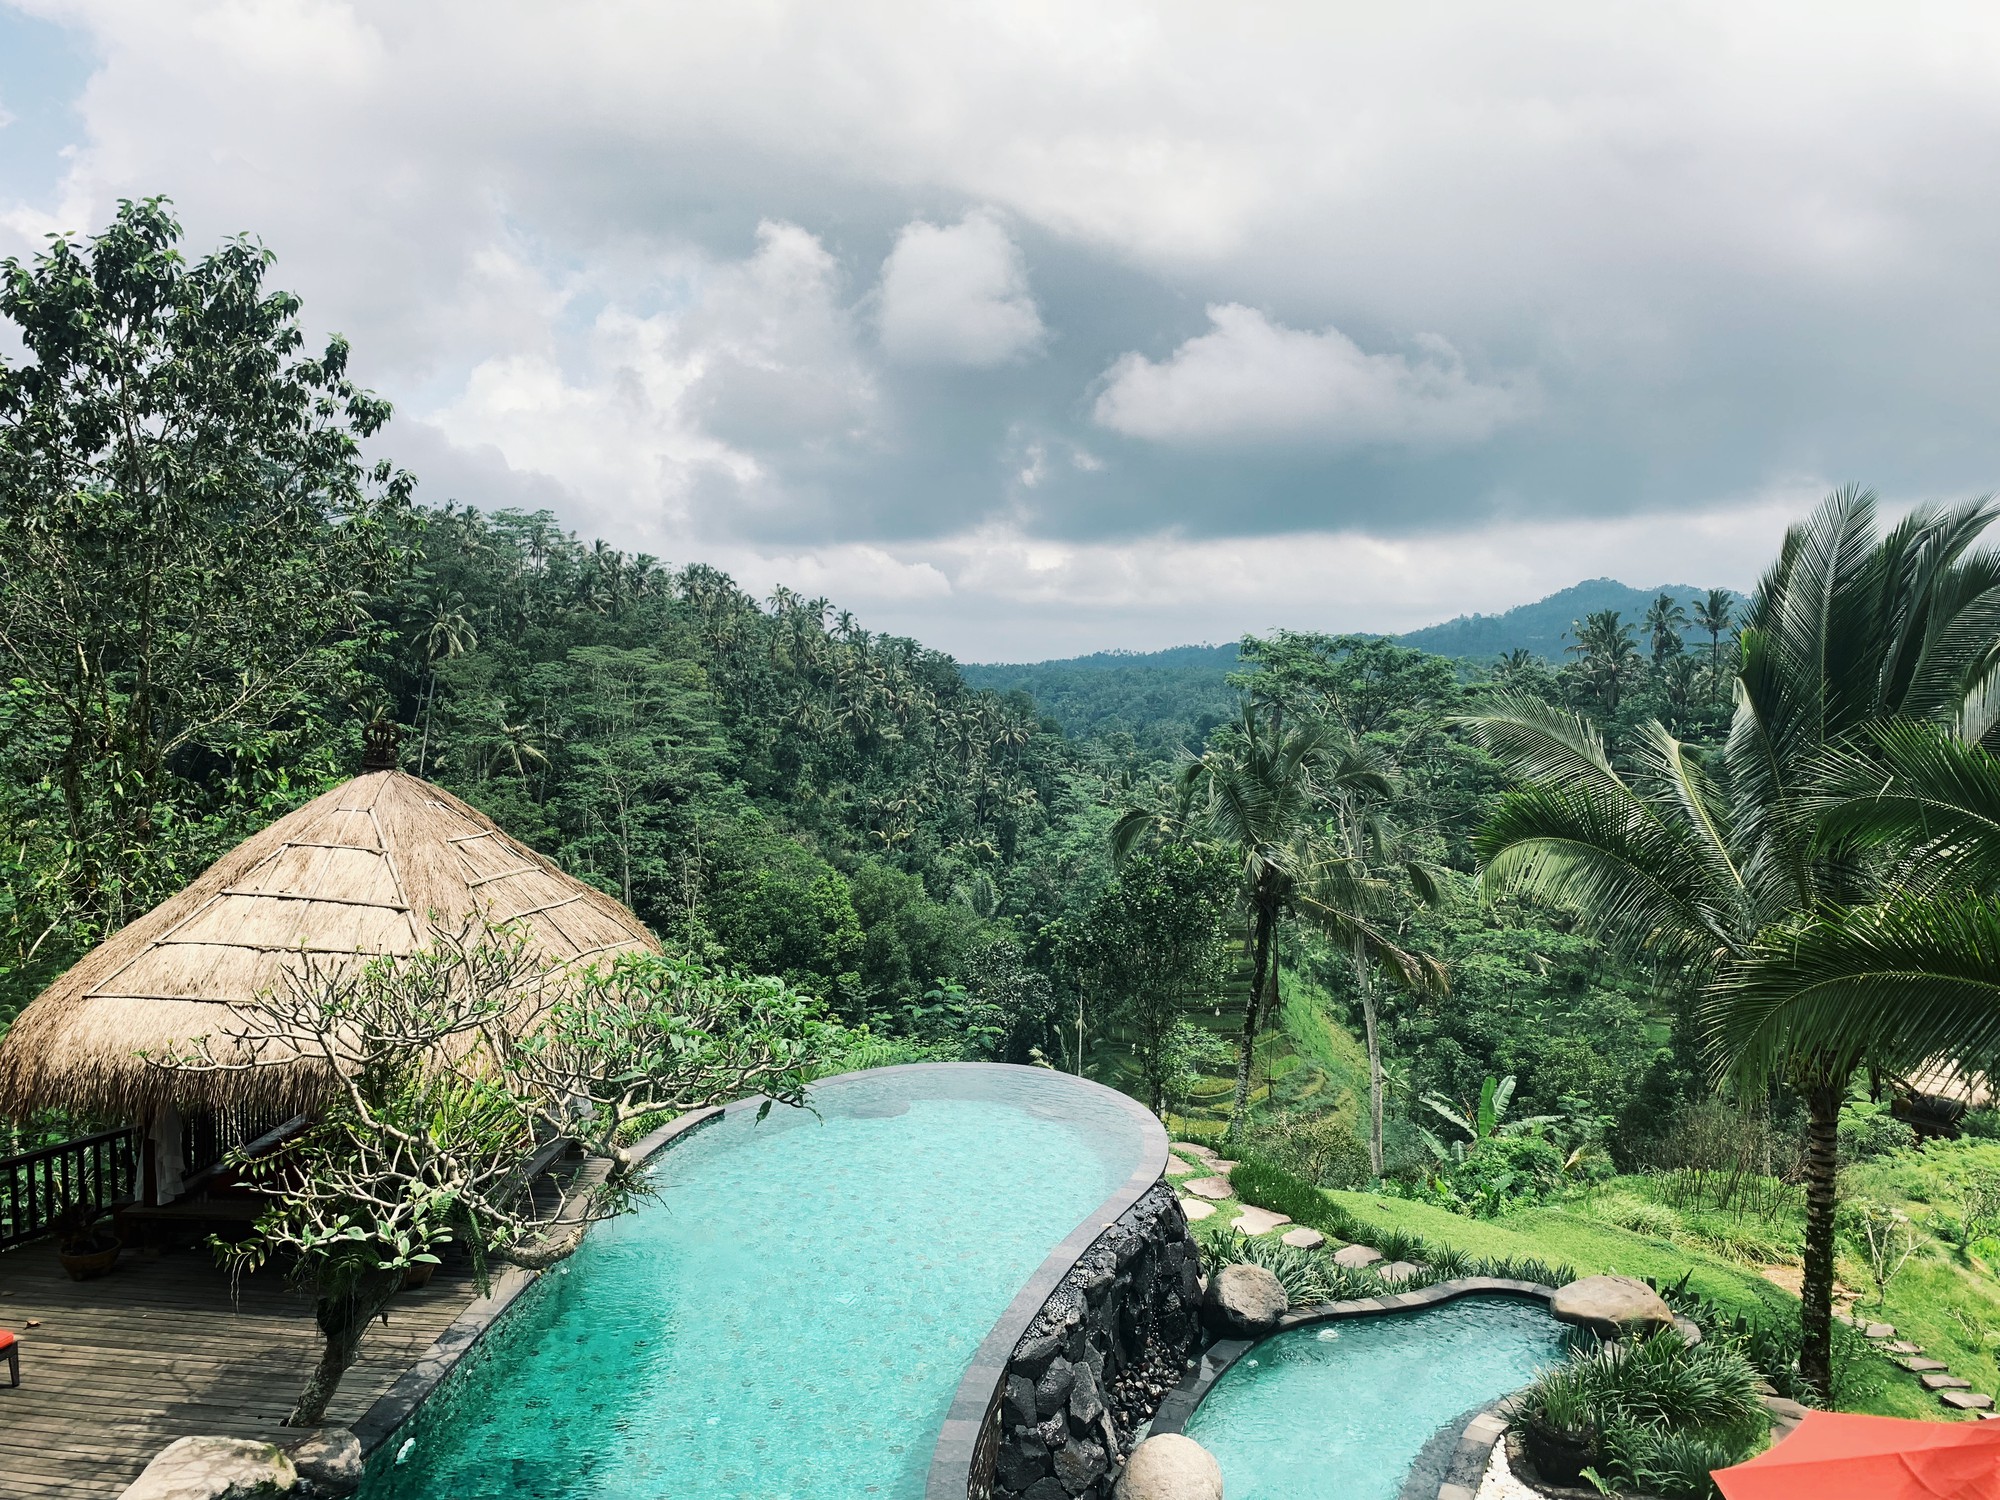 Mặc cho người khen kẻ chê về Bali, cặp vợ chồng doanh nhân vẫn chọn hòn đảo thiên đường để kỷ niệm 1 năm ngày cưới - Ảnh 1.